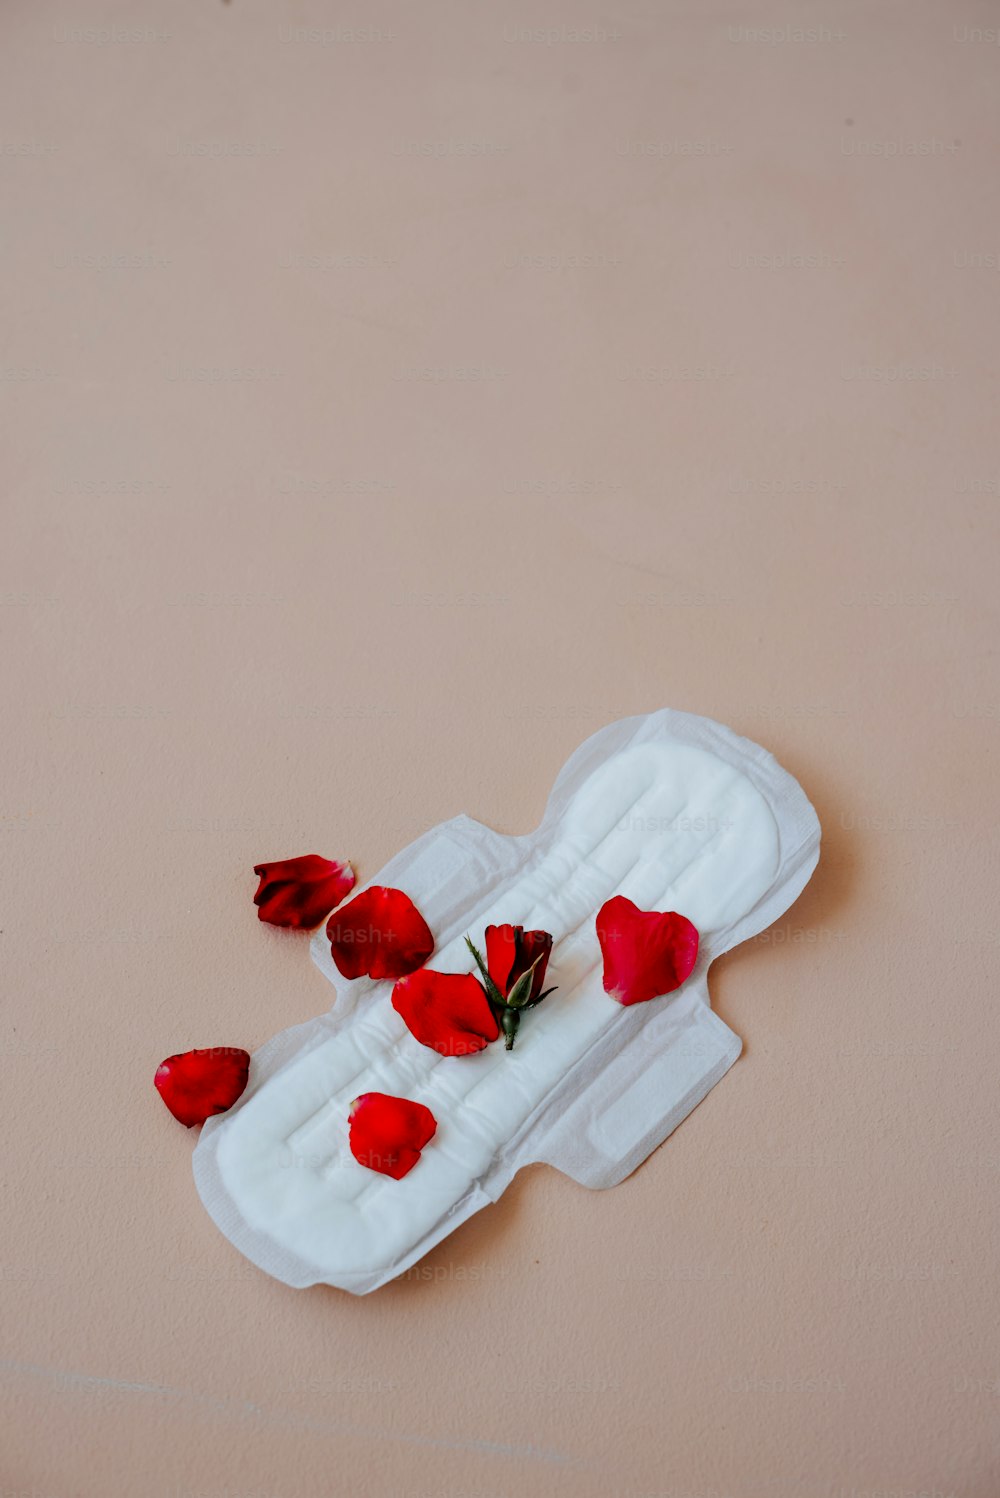 un objet blanc avec des fleurs rouges dessus